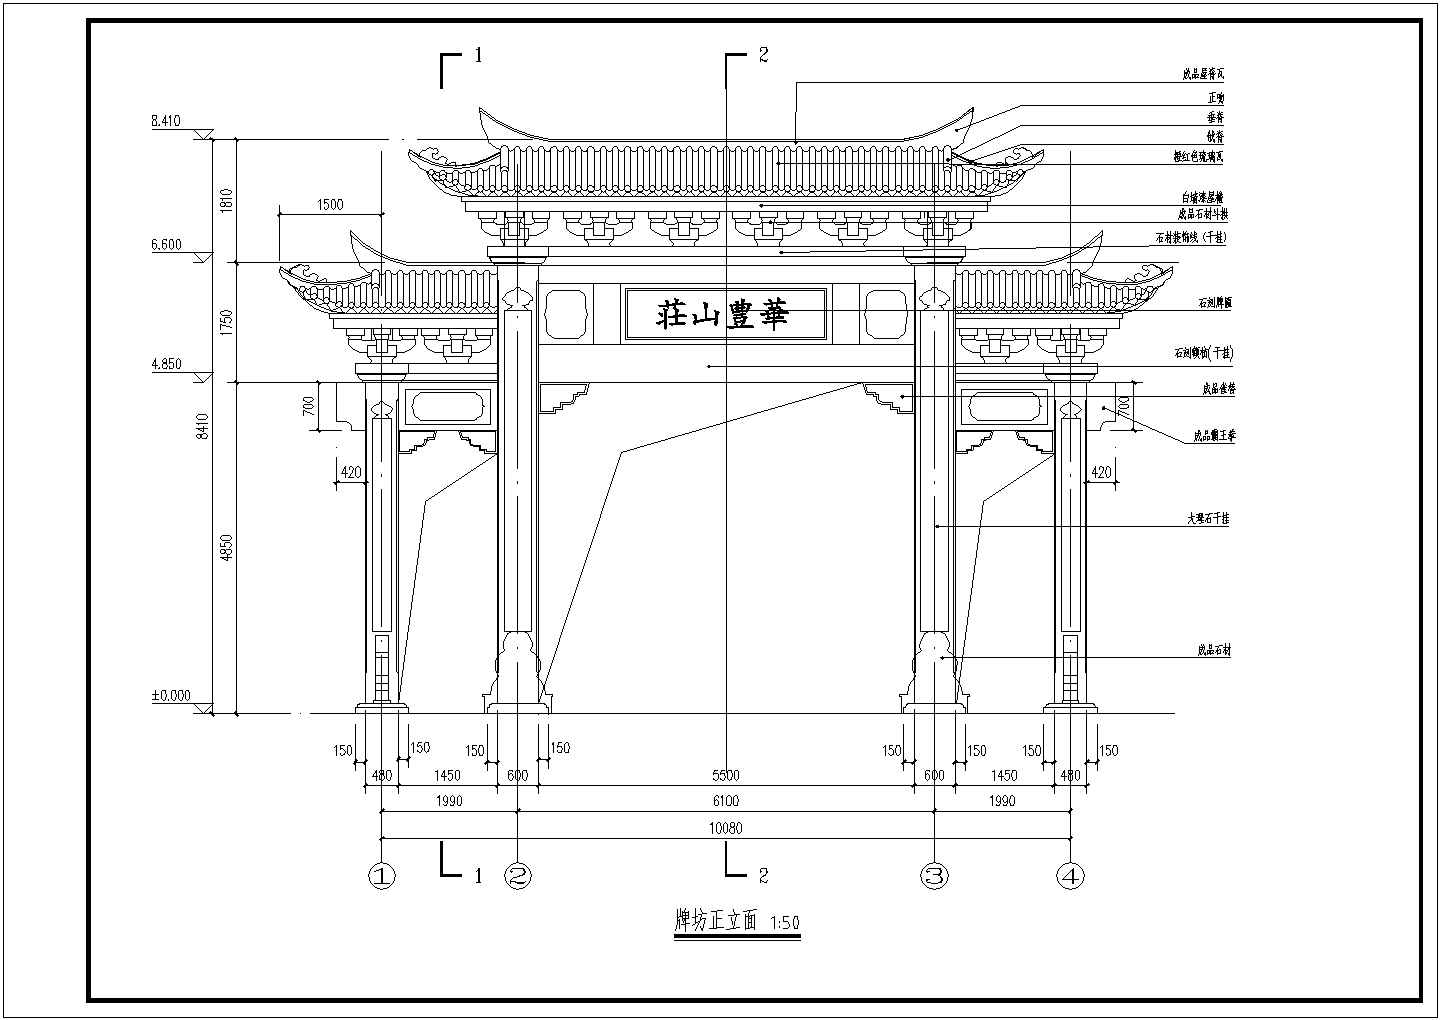 【深圳】钢筋混凝土结构仿古牌坊建筑设计施工图